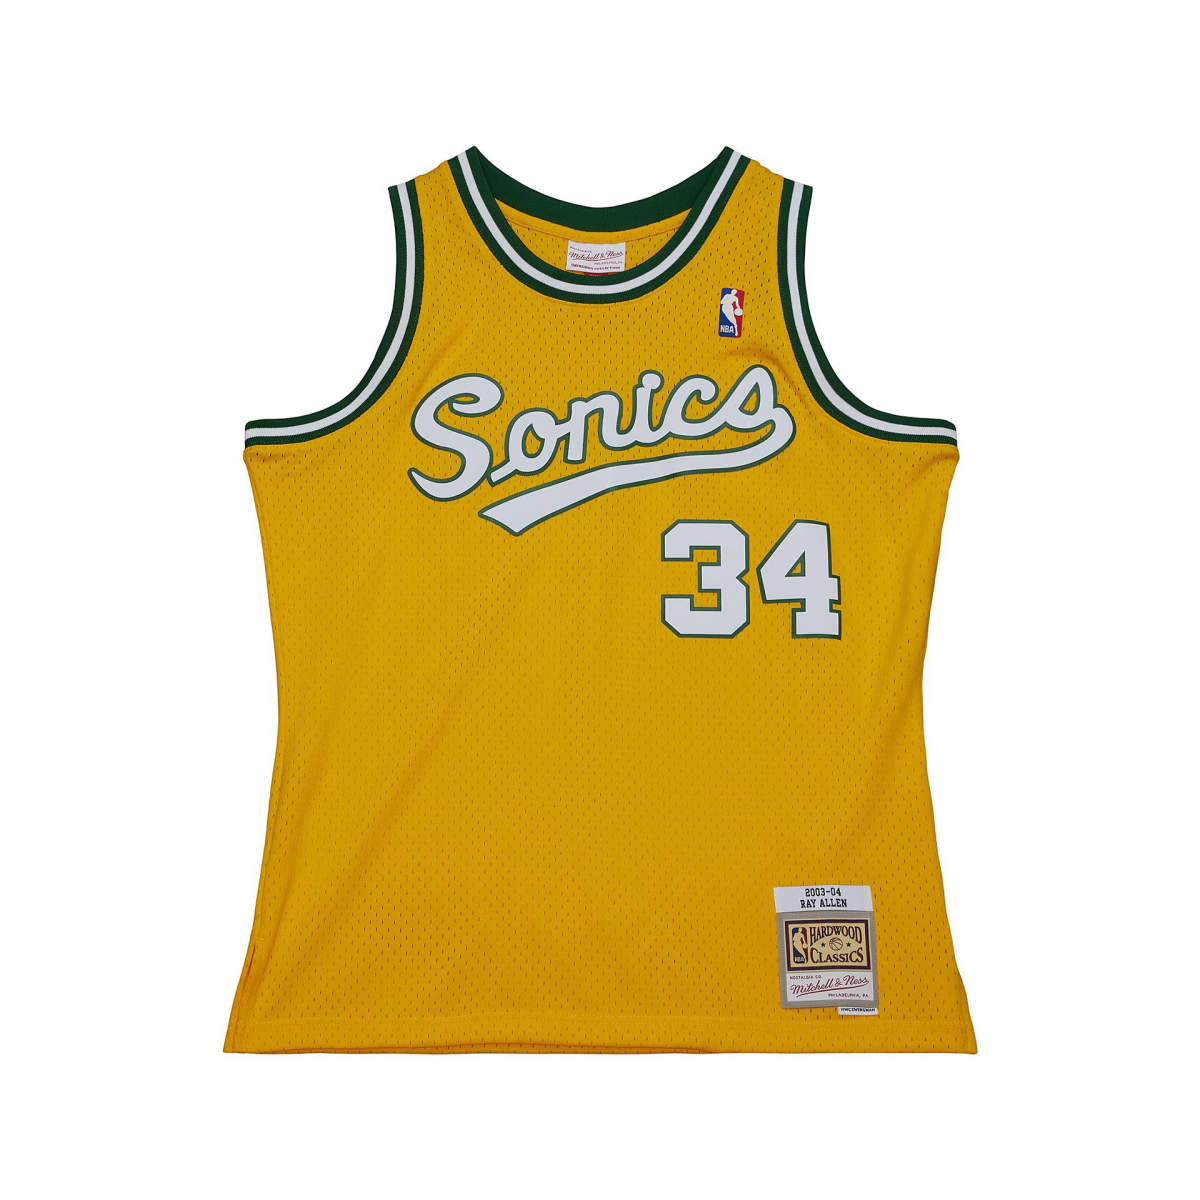 Seattle supersonics 2003-04 swingman jersey allen